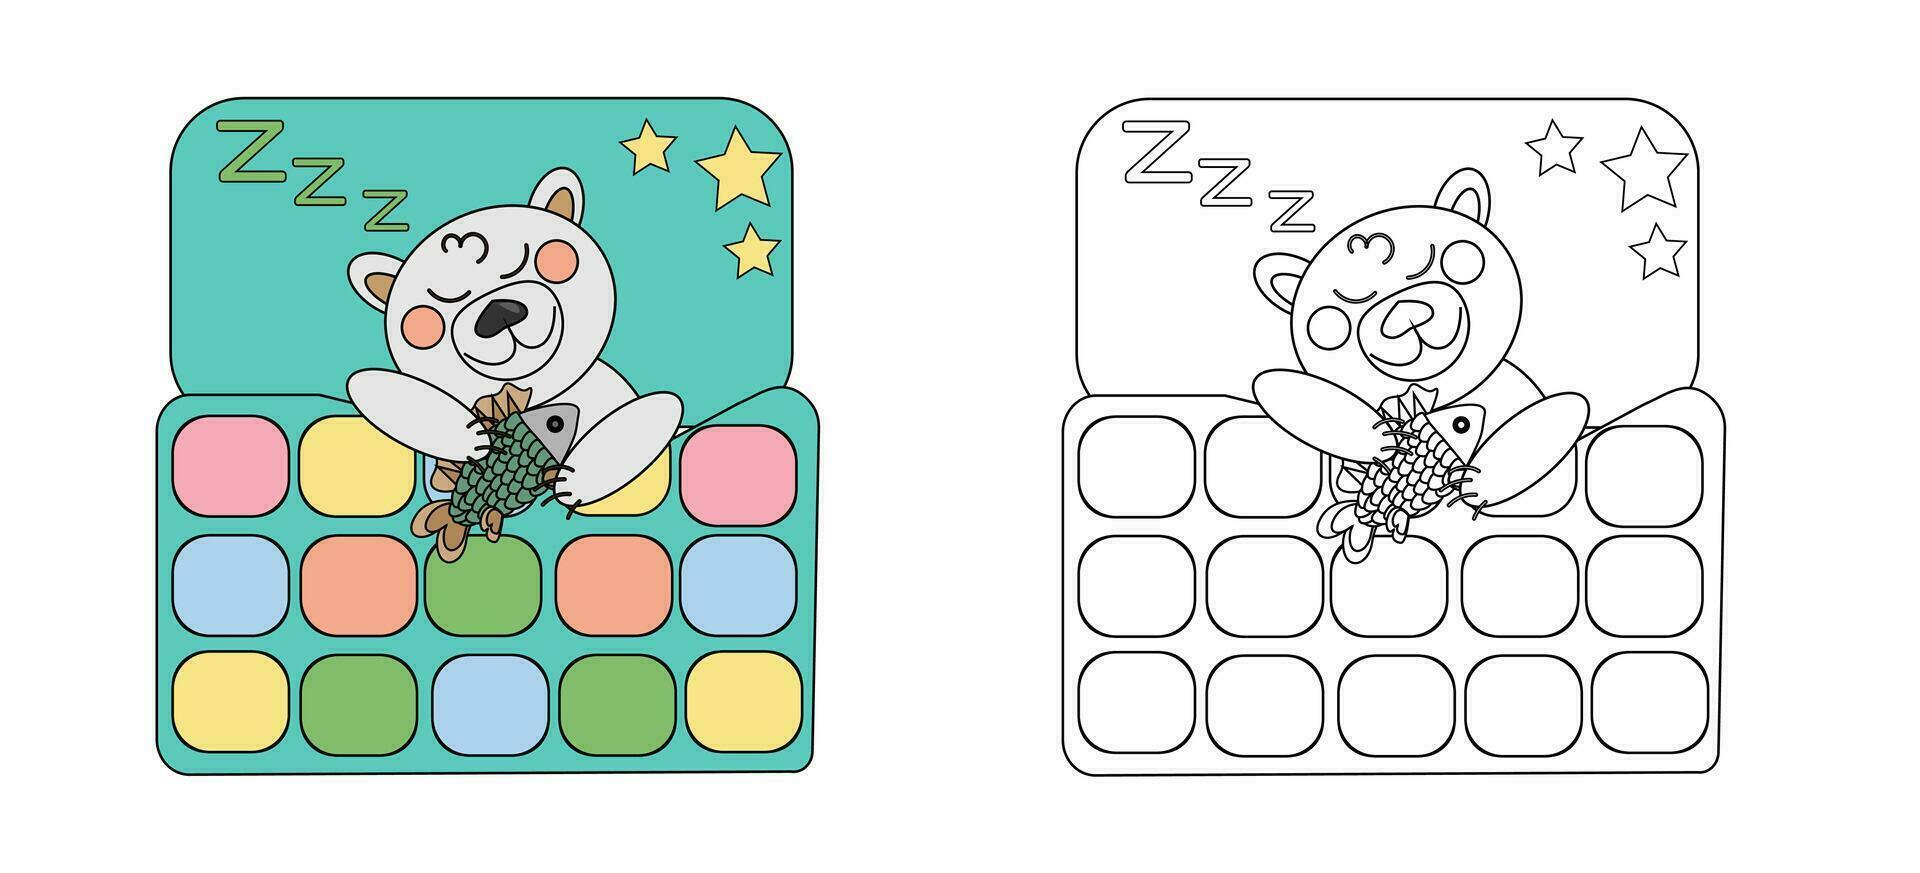 vector illustratie kleur boek polair baby beer met vis slapen onder een lapwerk dekbed. een schets zwart en wit tekening en een kleur versie voor een voorbeeld.